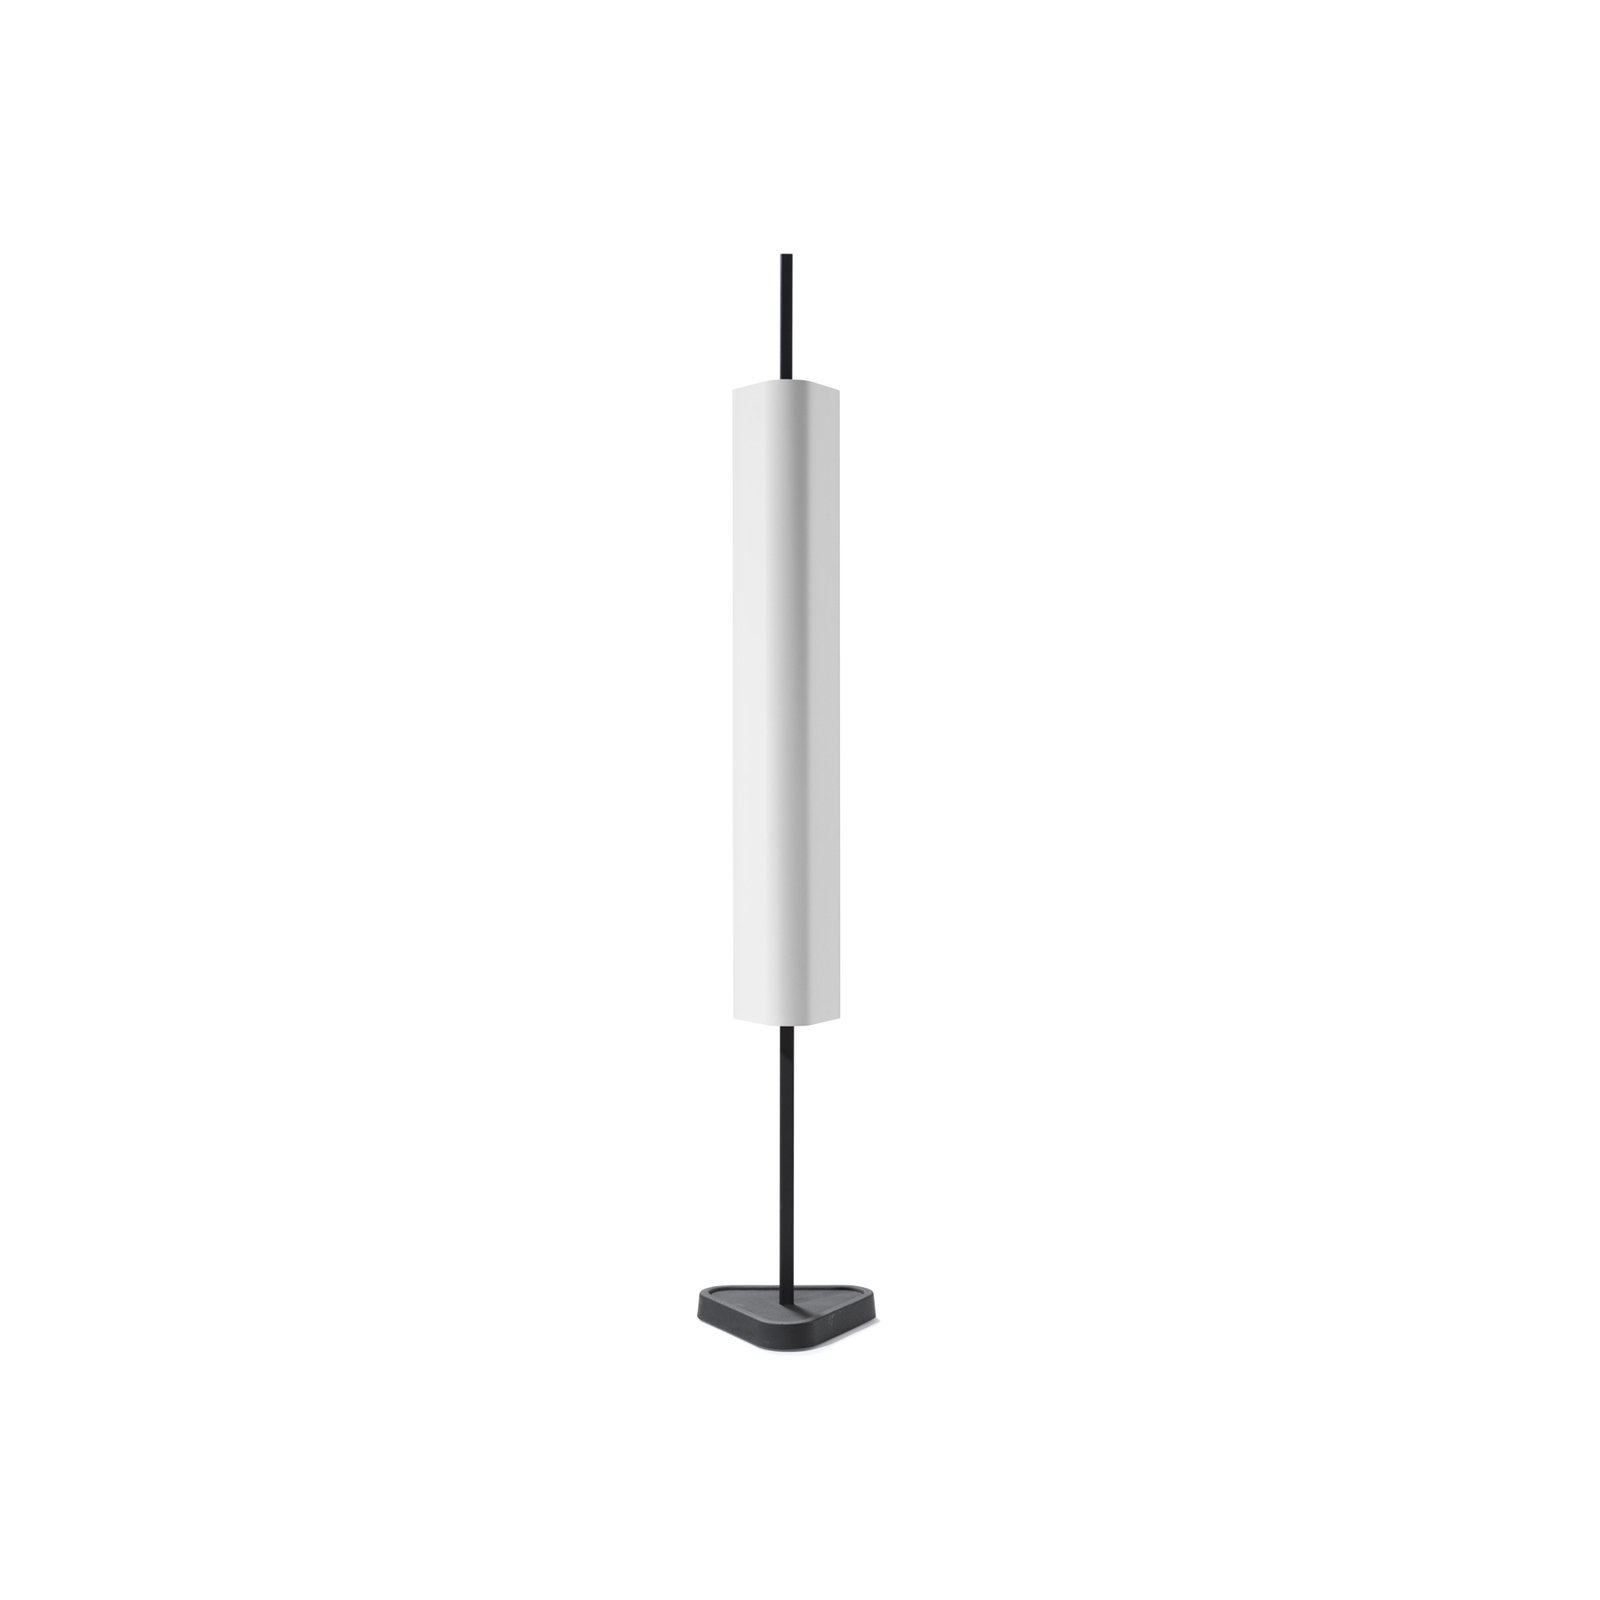 FLOS LED-Tischleuchte Emi, weiß, Höhe 114 cm, dimmbar